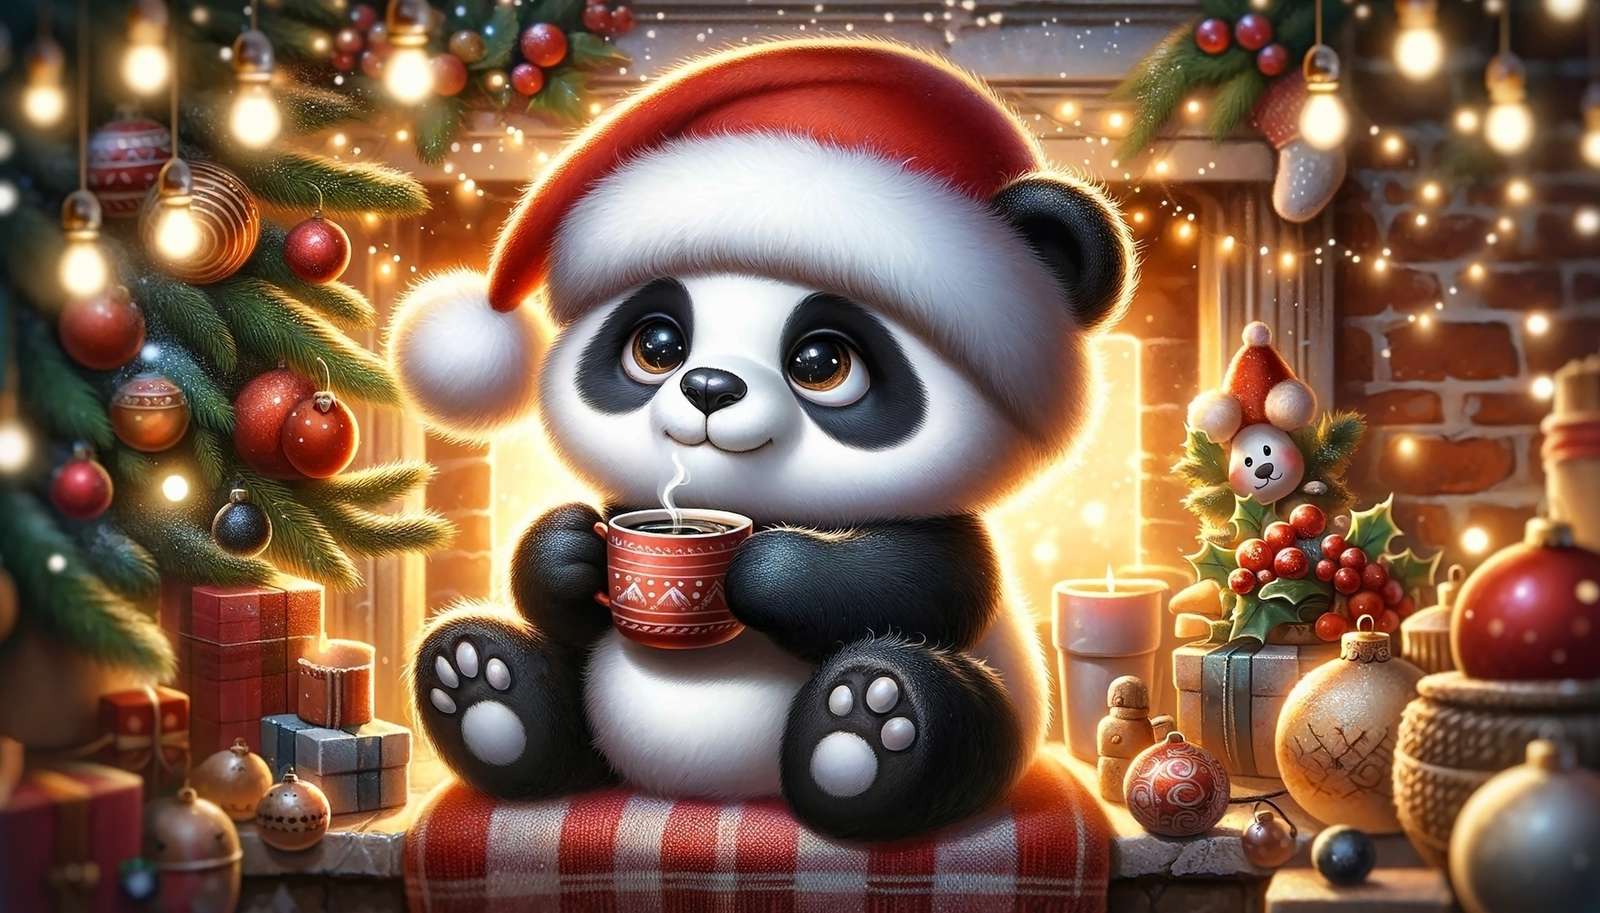 Panda met kerstmuts naast de kerstboom en open haard online puzzel